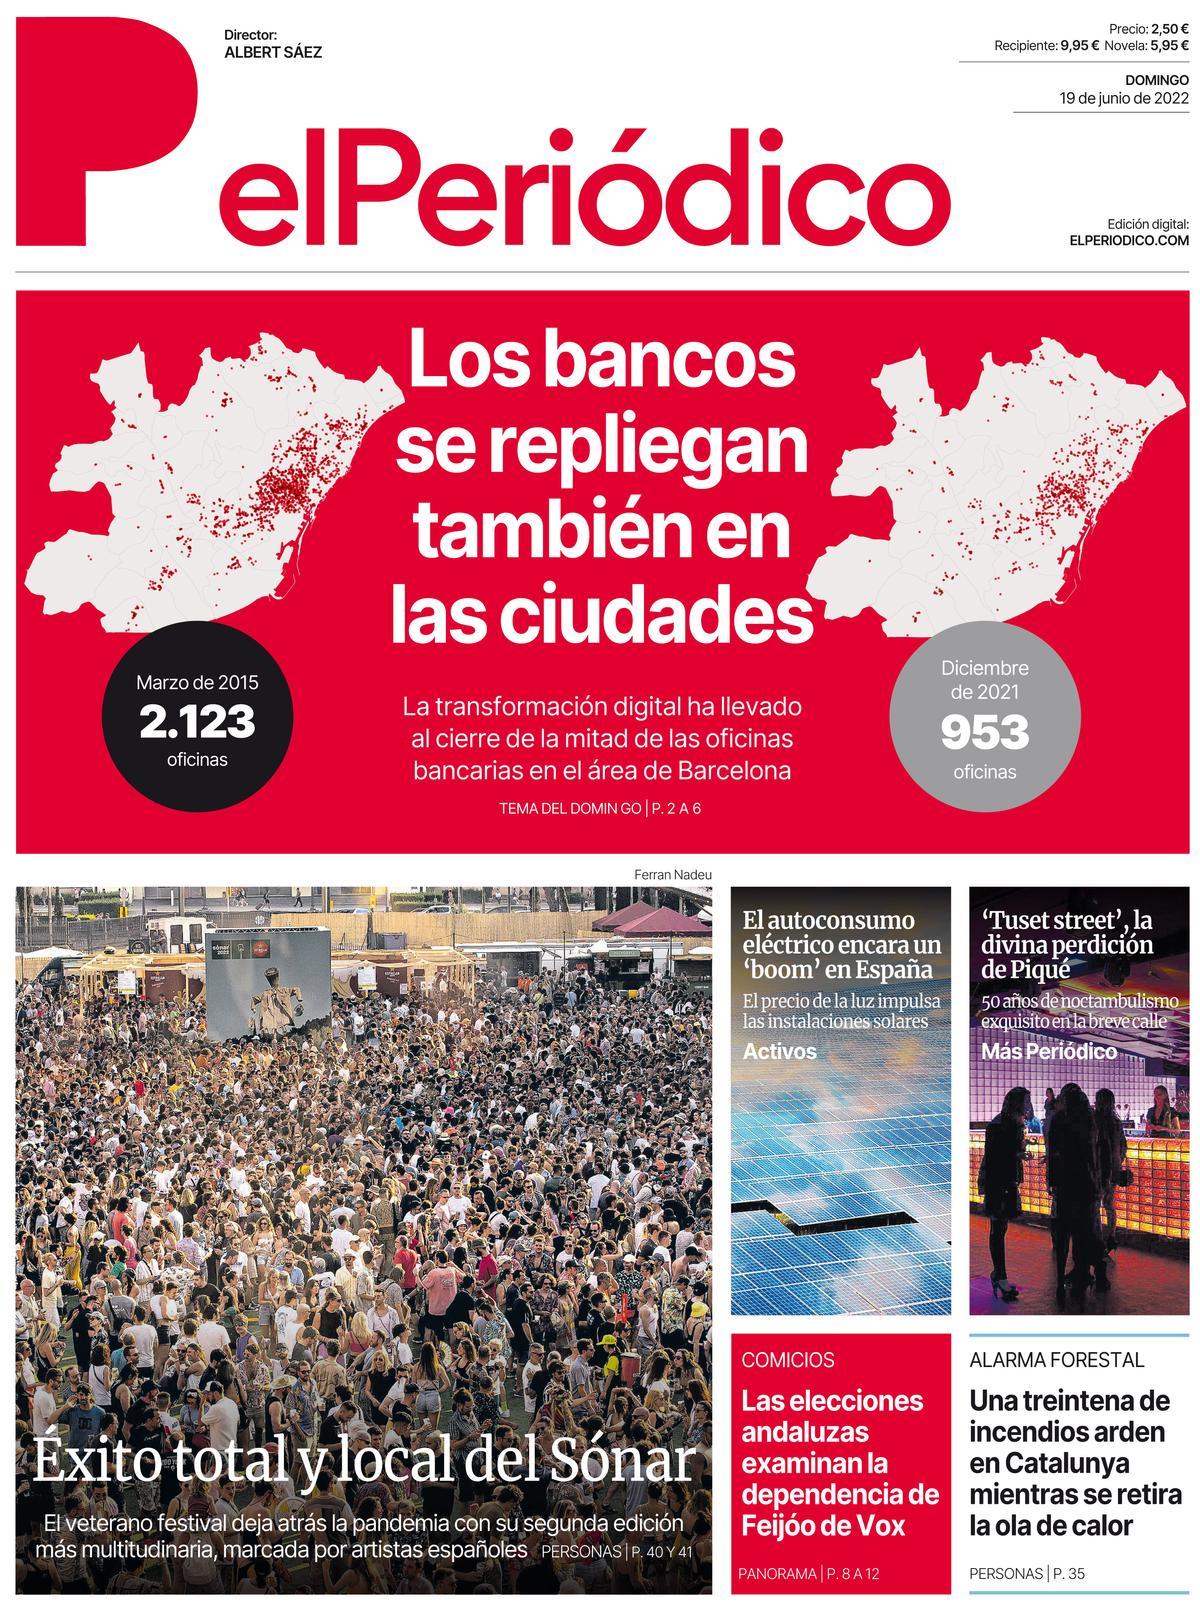 La portada de EL PERIÓDICO del 19 de junio de 2022.